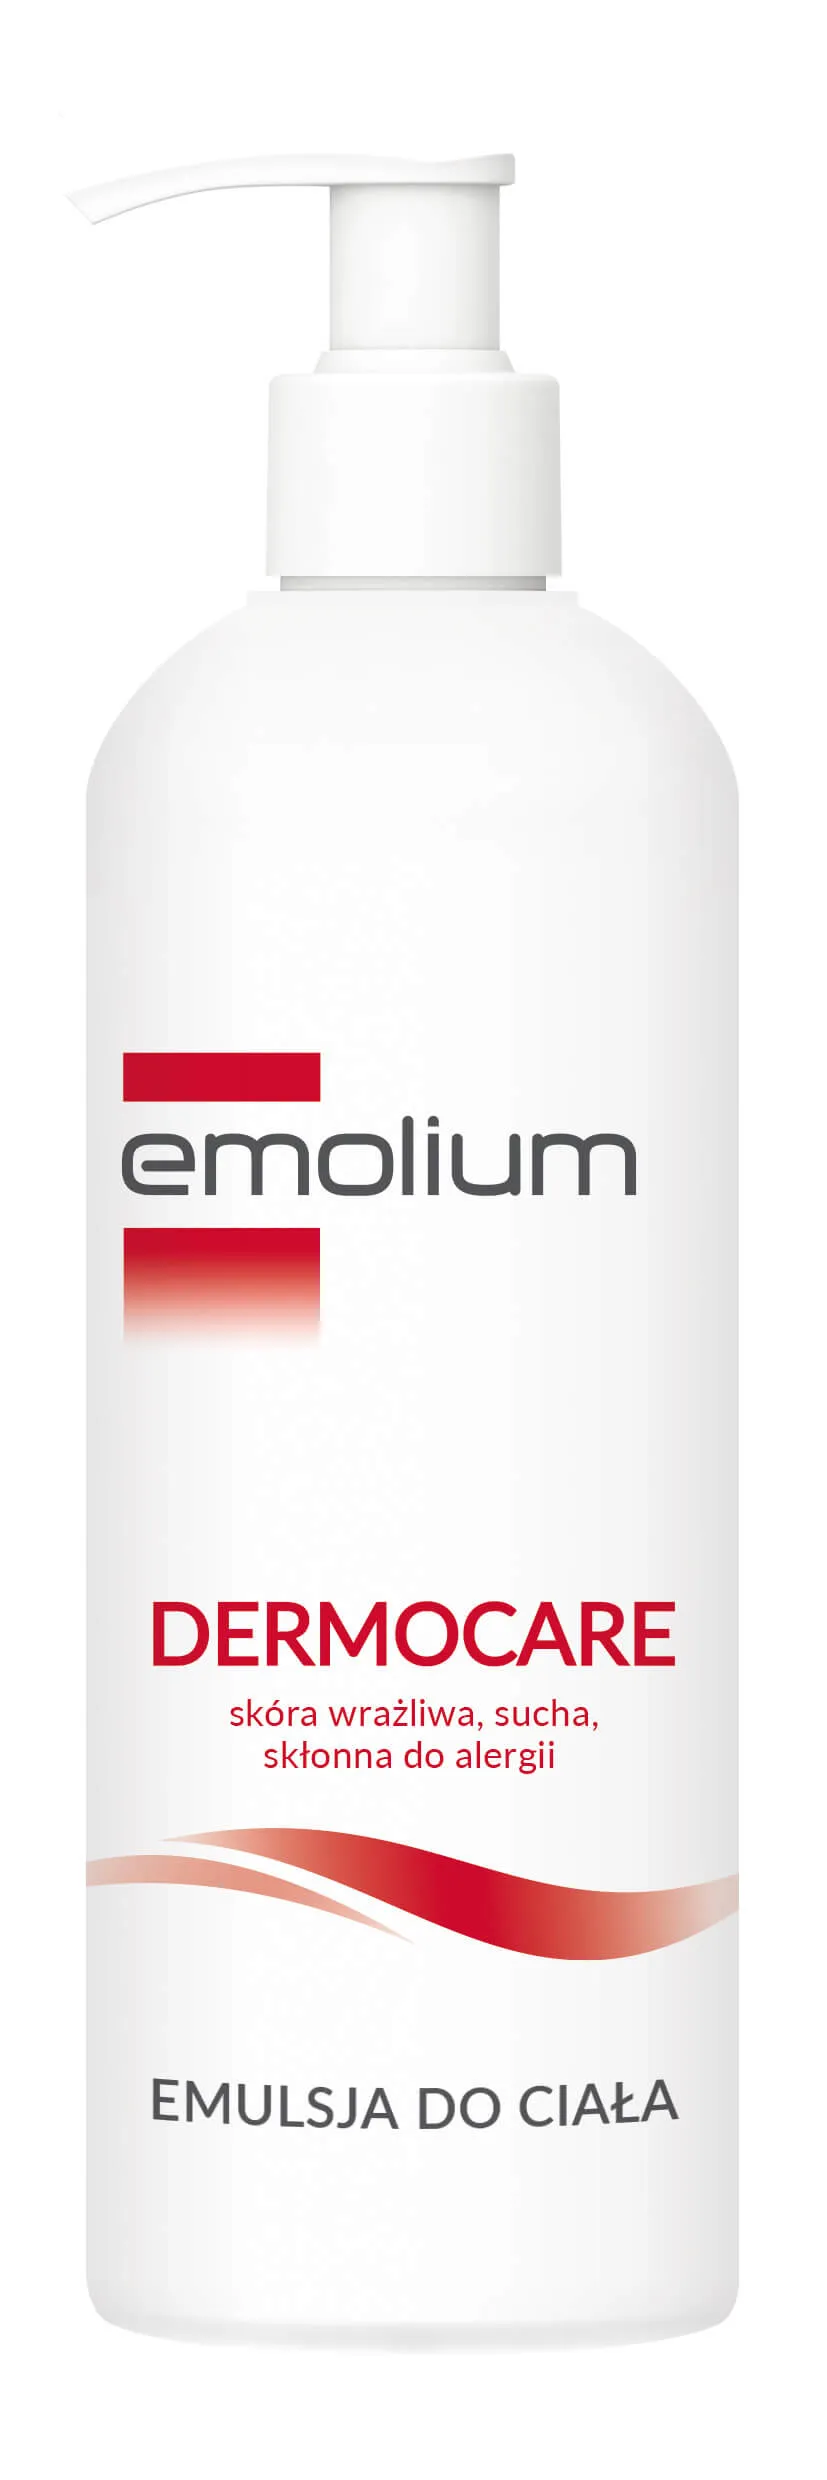 Emolium Dermocare, emulsja do ciała, 400 ml 